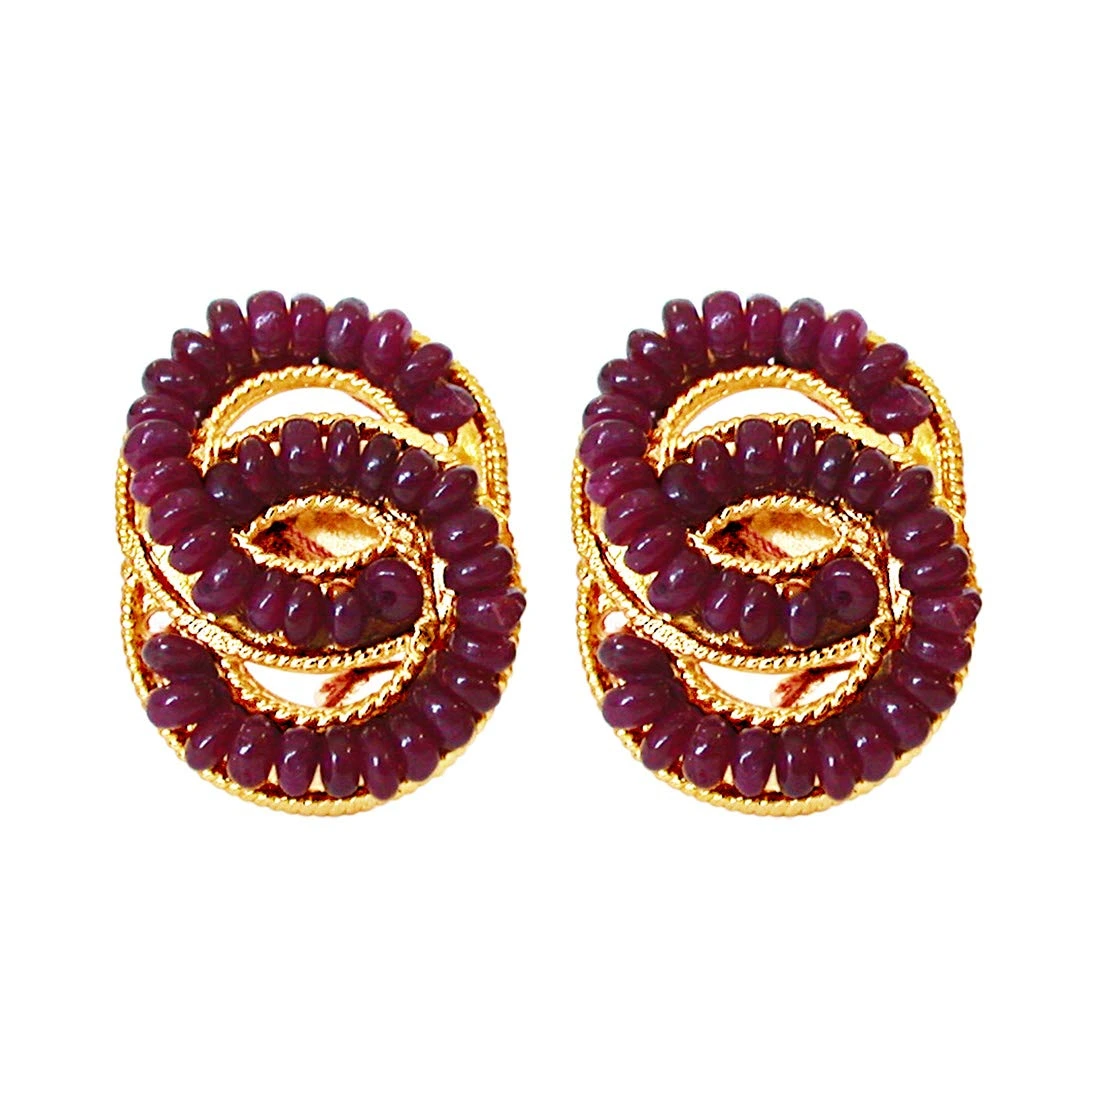 She's Mine Forever - Real Ruby Beads & Gold Plated Interlocked Earrings for Women (SE75)